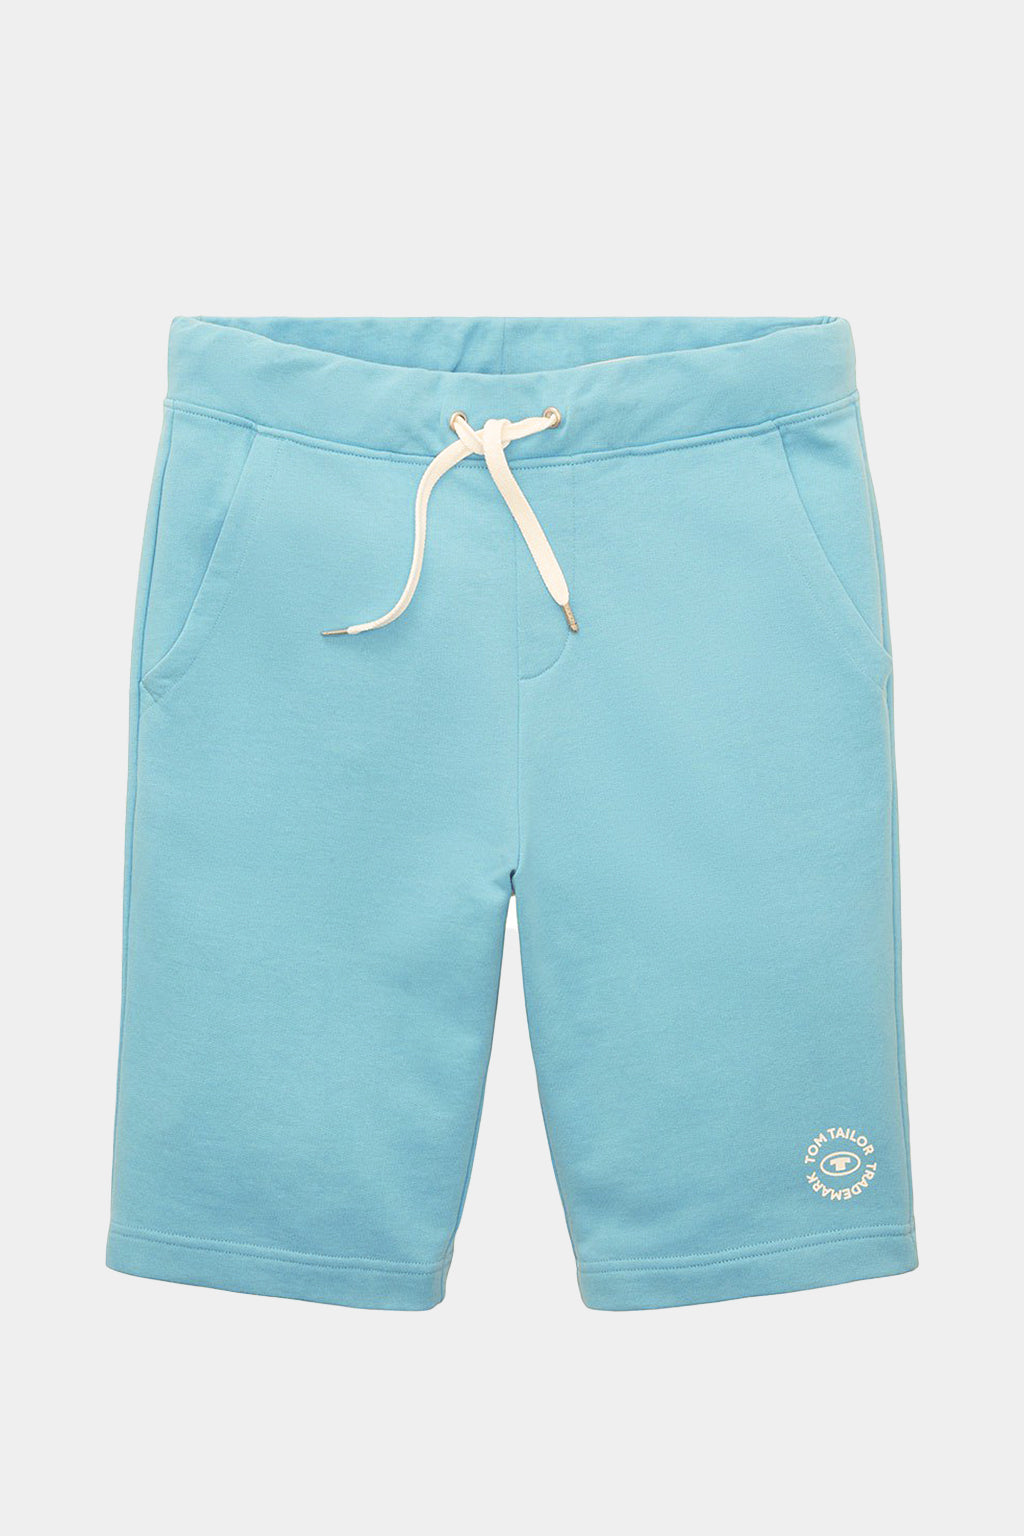 Tom Tailor - Bermuda Sweatpants Shorts